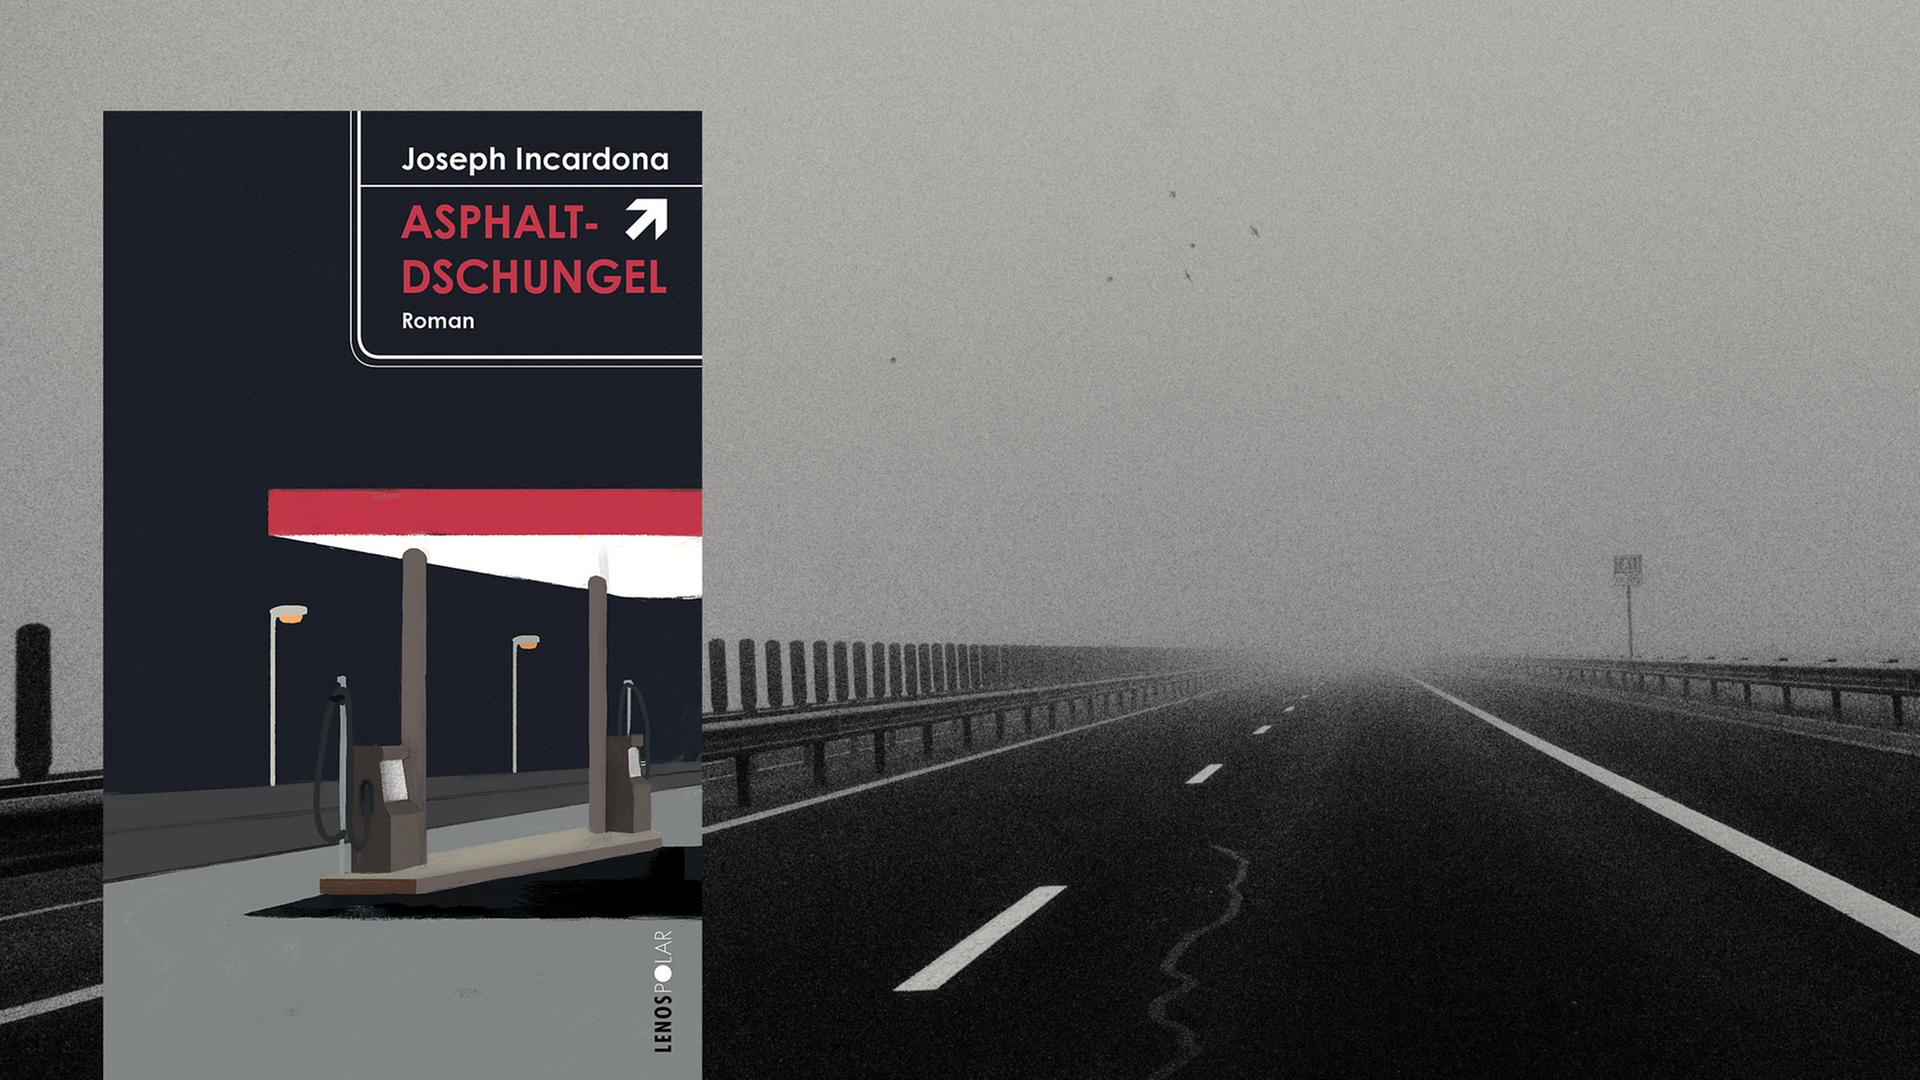 Cover von Joseph Incardonas Krimi "Asphaltdschungel". Im Hintergrund ist eine nebelige Autobahn zu sehen.